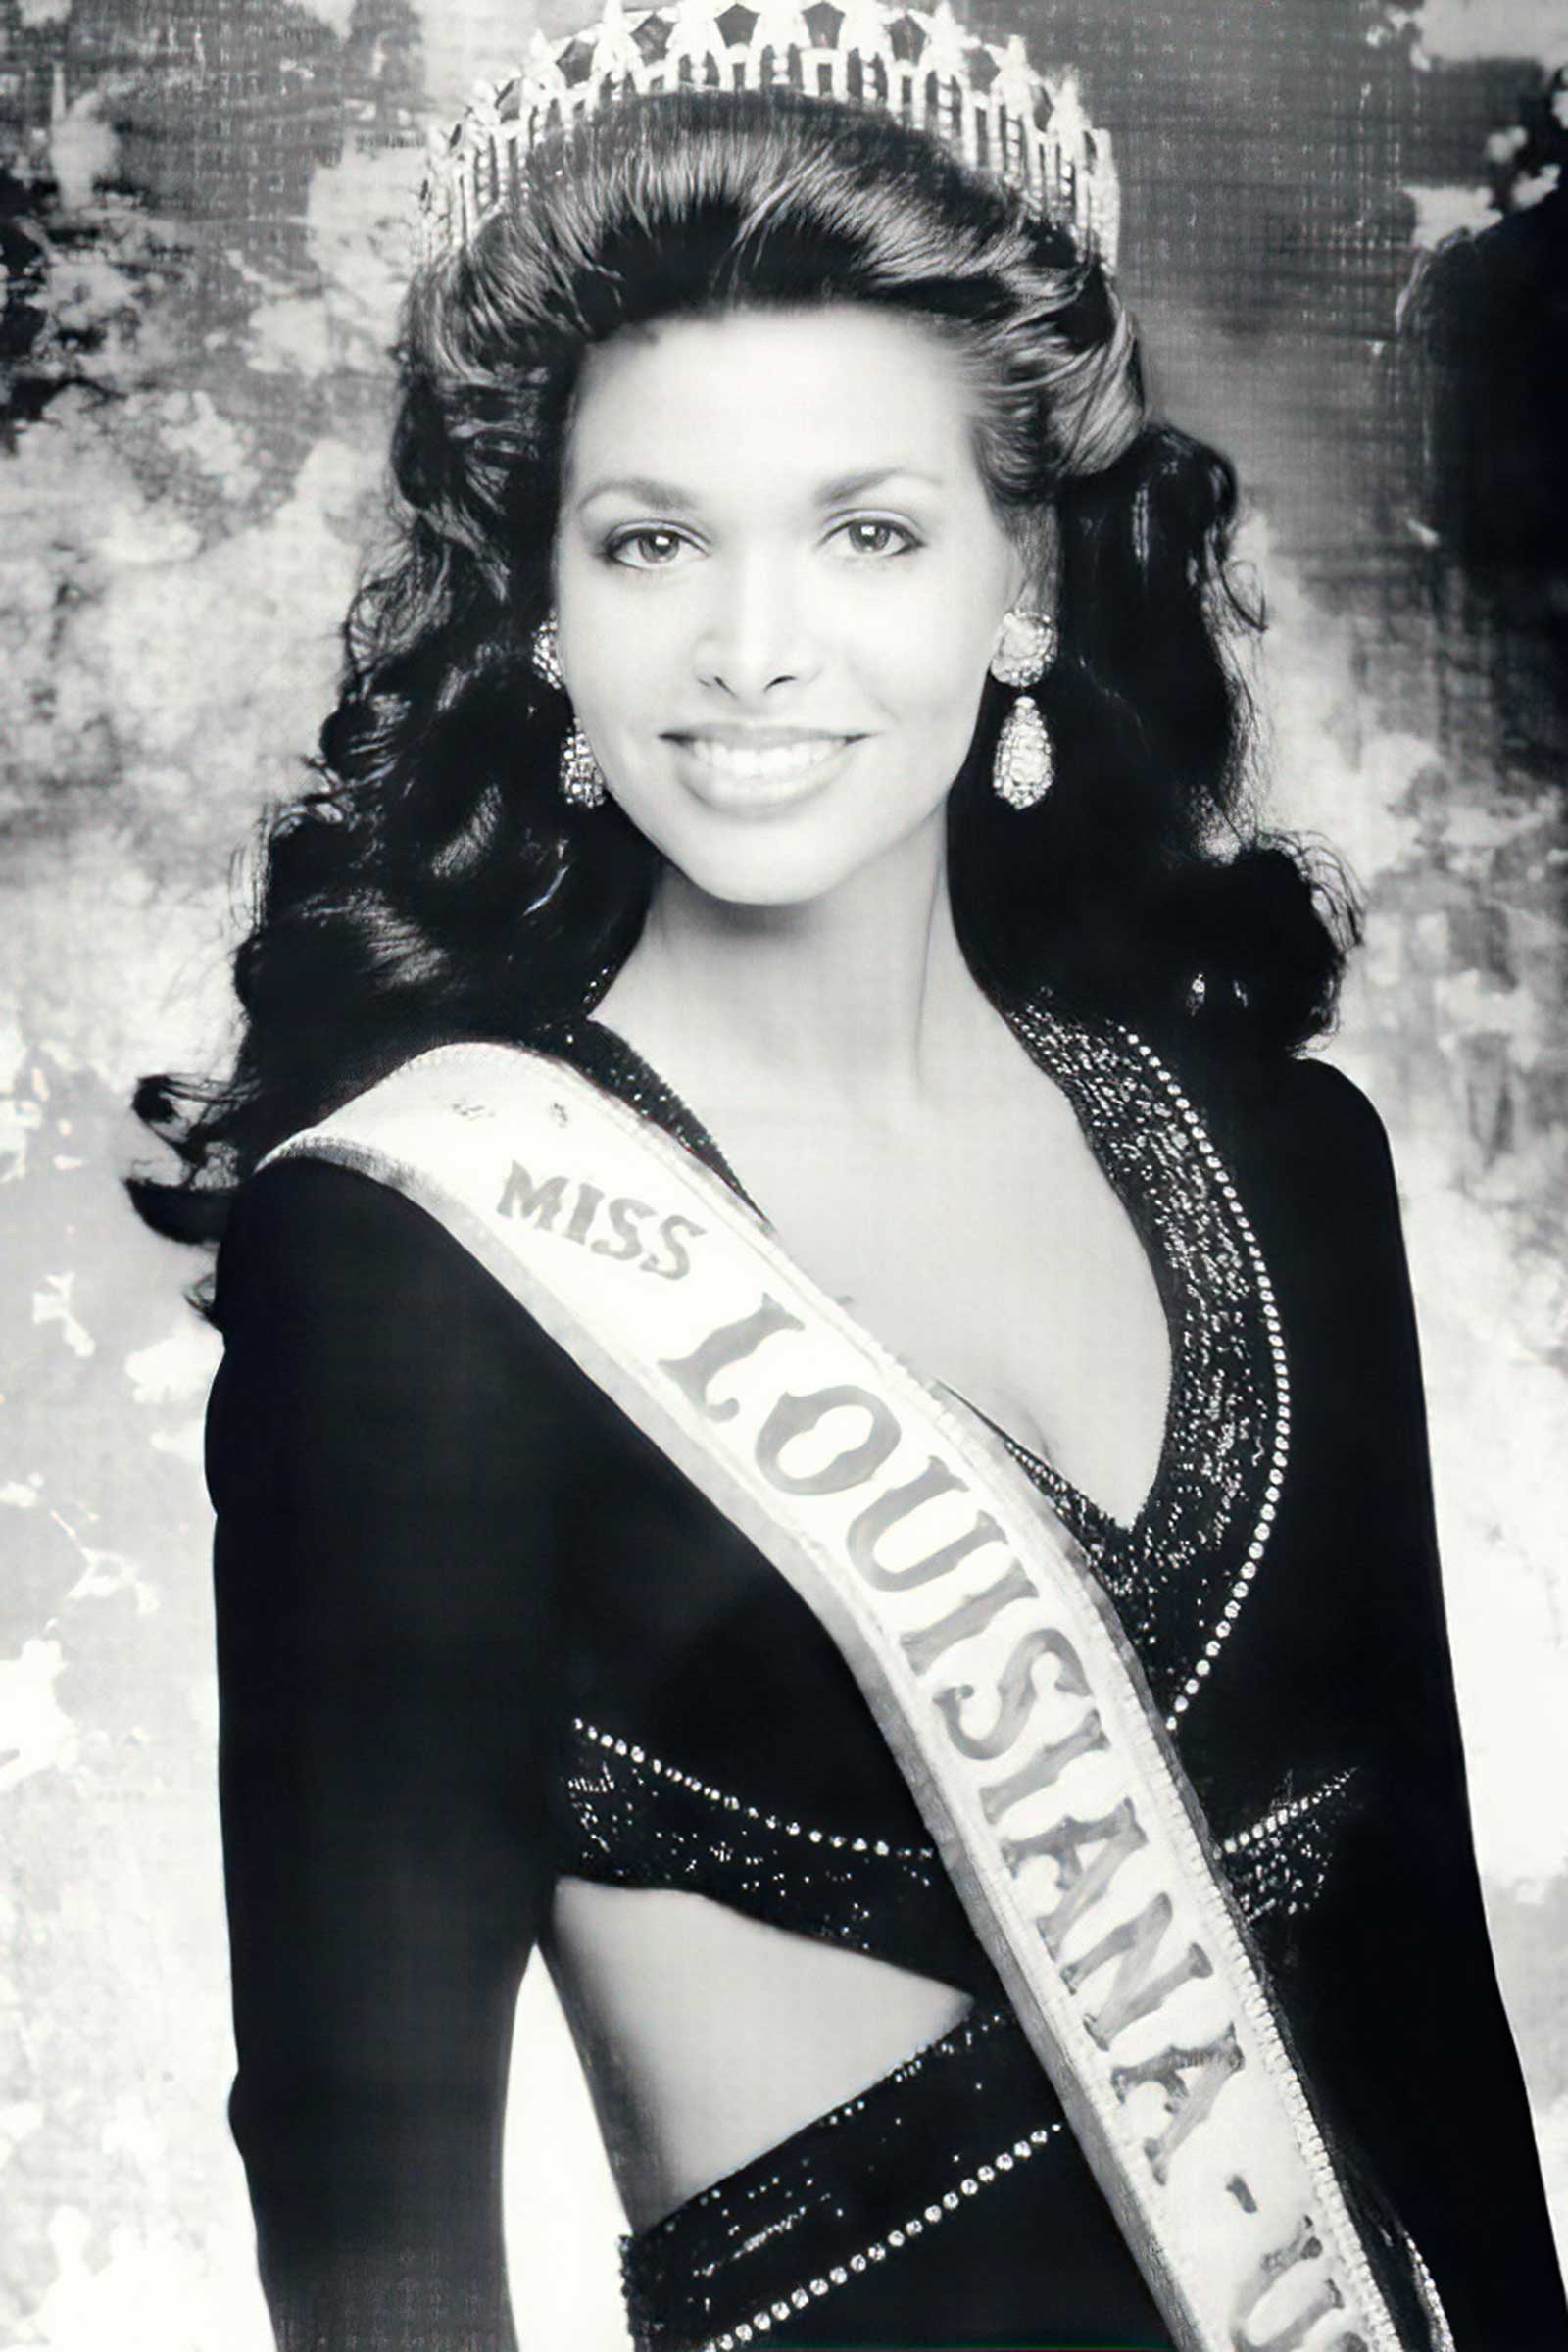 Miss Louisiana USA 2020 Mariah Clayton